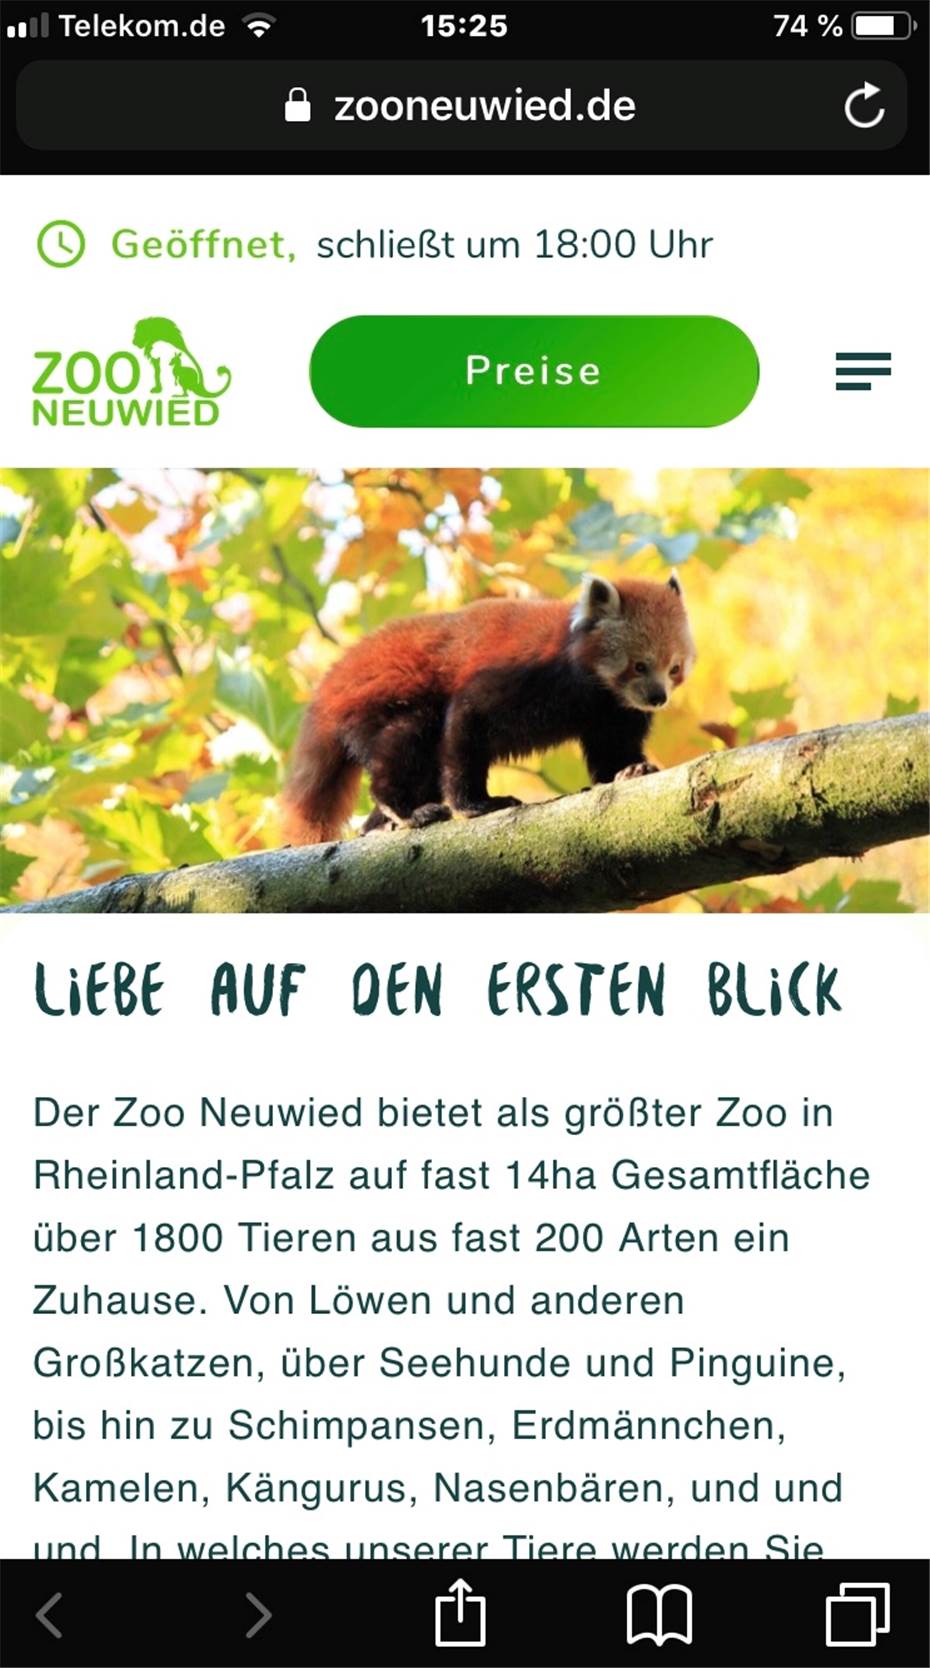 Internetseite des Zoo Neuwied
erstrahlt in neuem Glanz